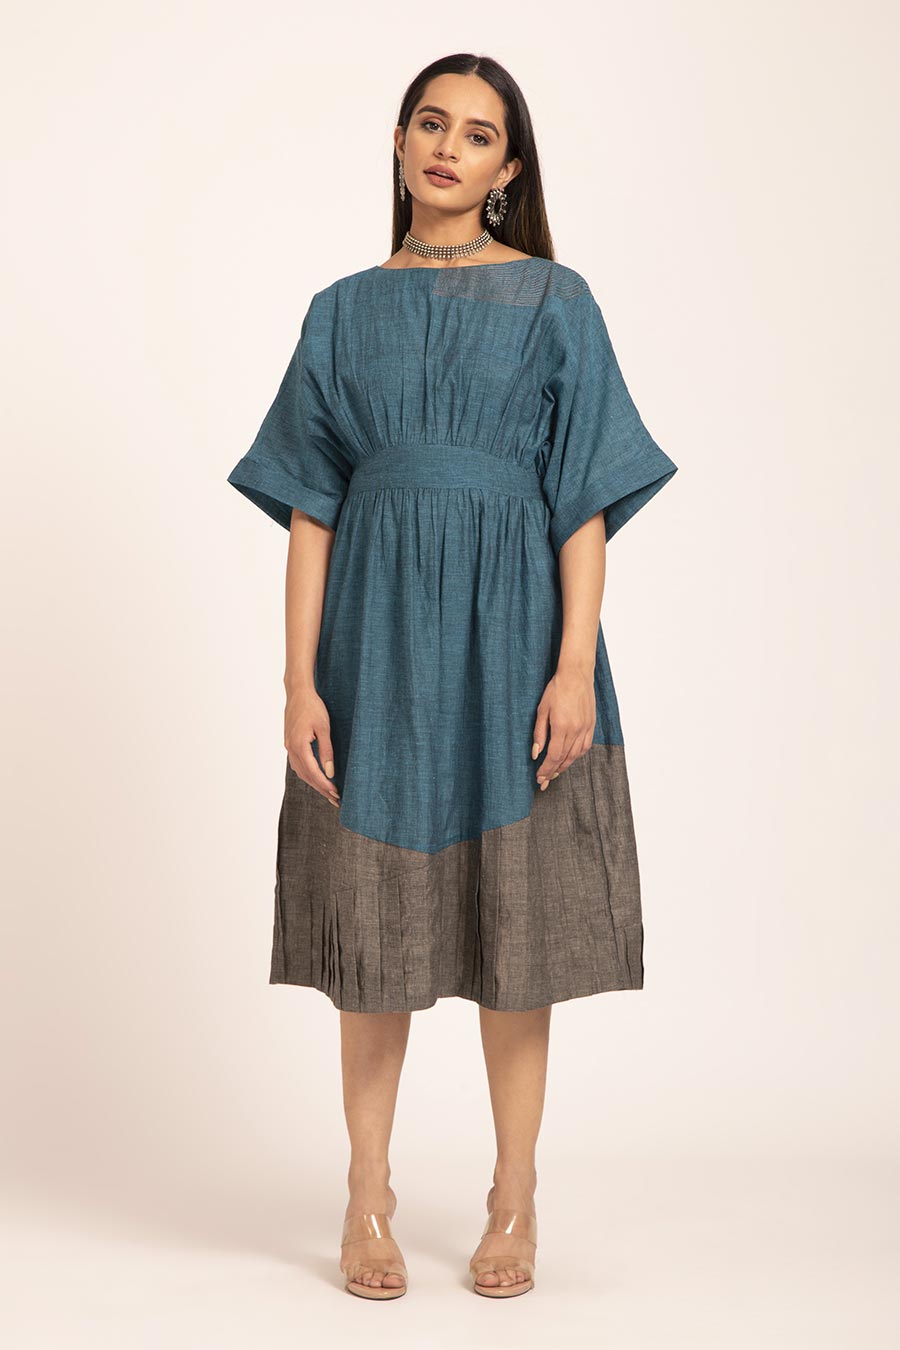 Oxalis - Teal Pleated Midi Dress